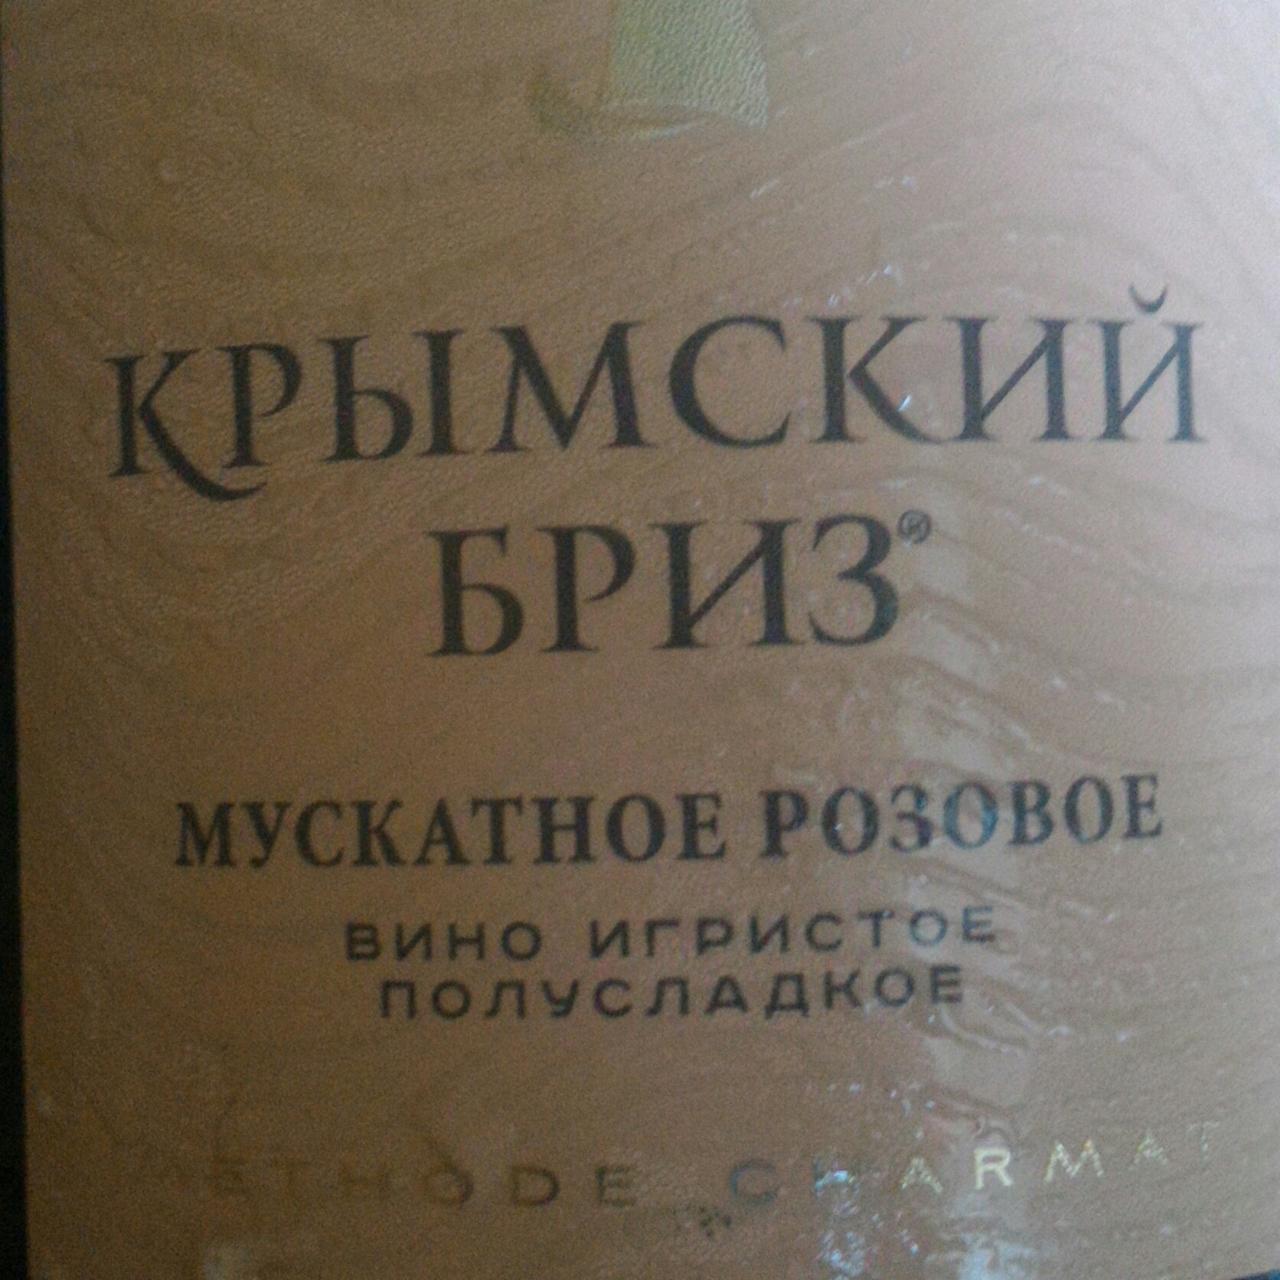 Фото - Вино игристое полусладкое мускатное розовое Крымский бриз